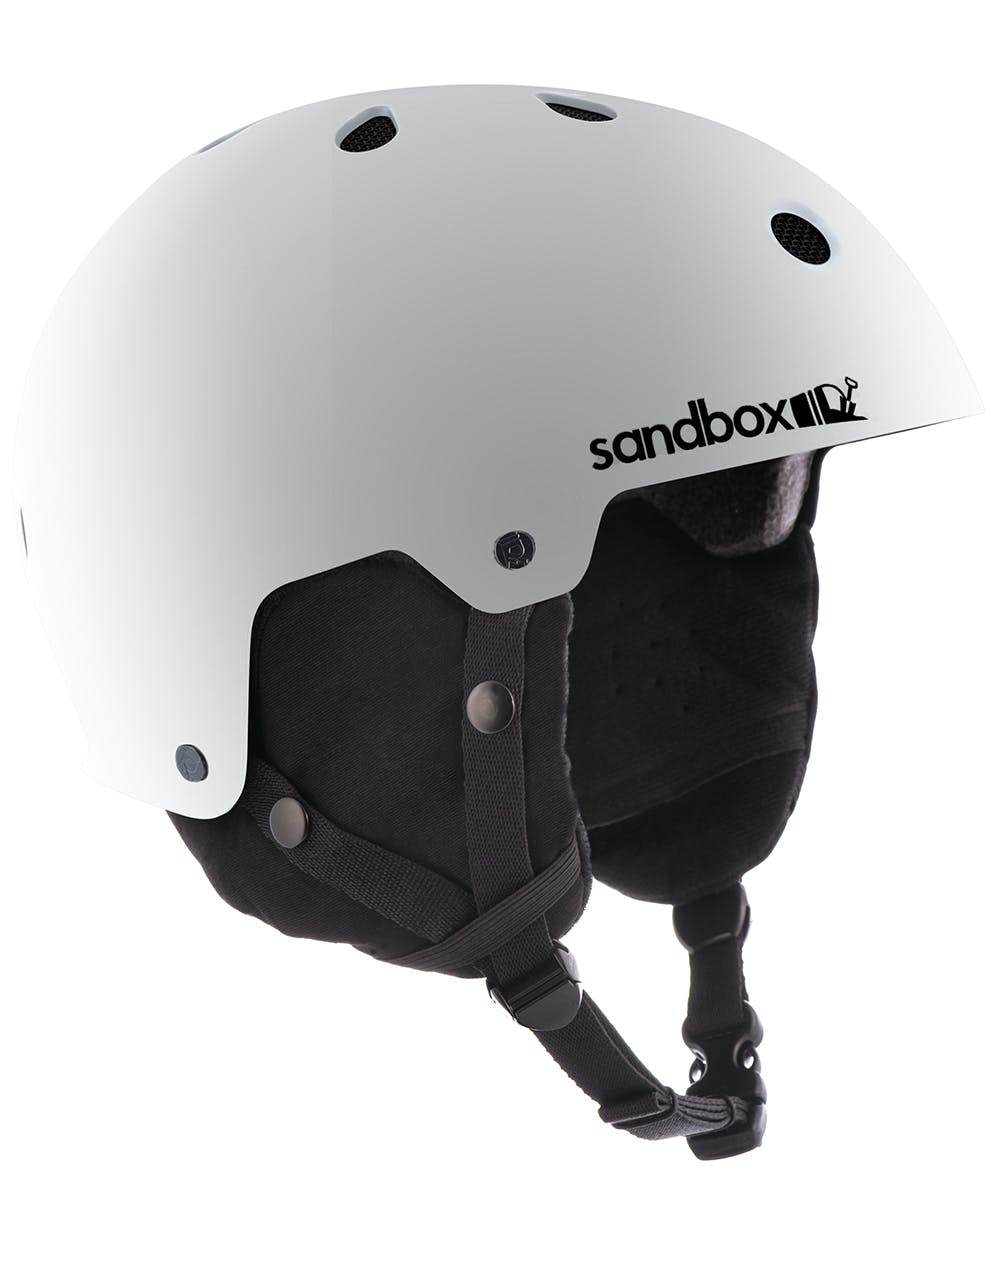 Sandbox Legend 2020 Snowboard Helmet - White